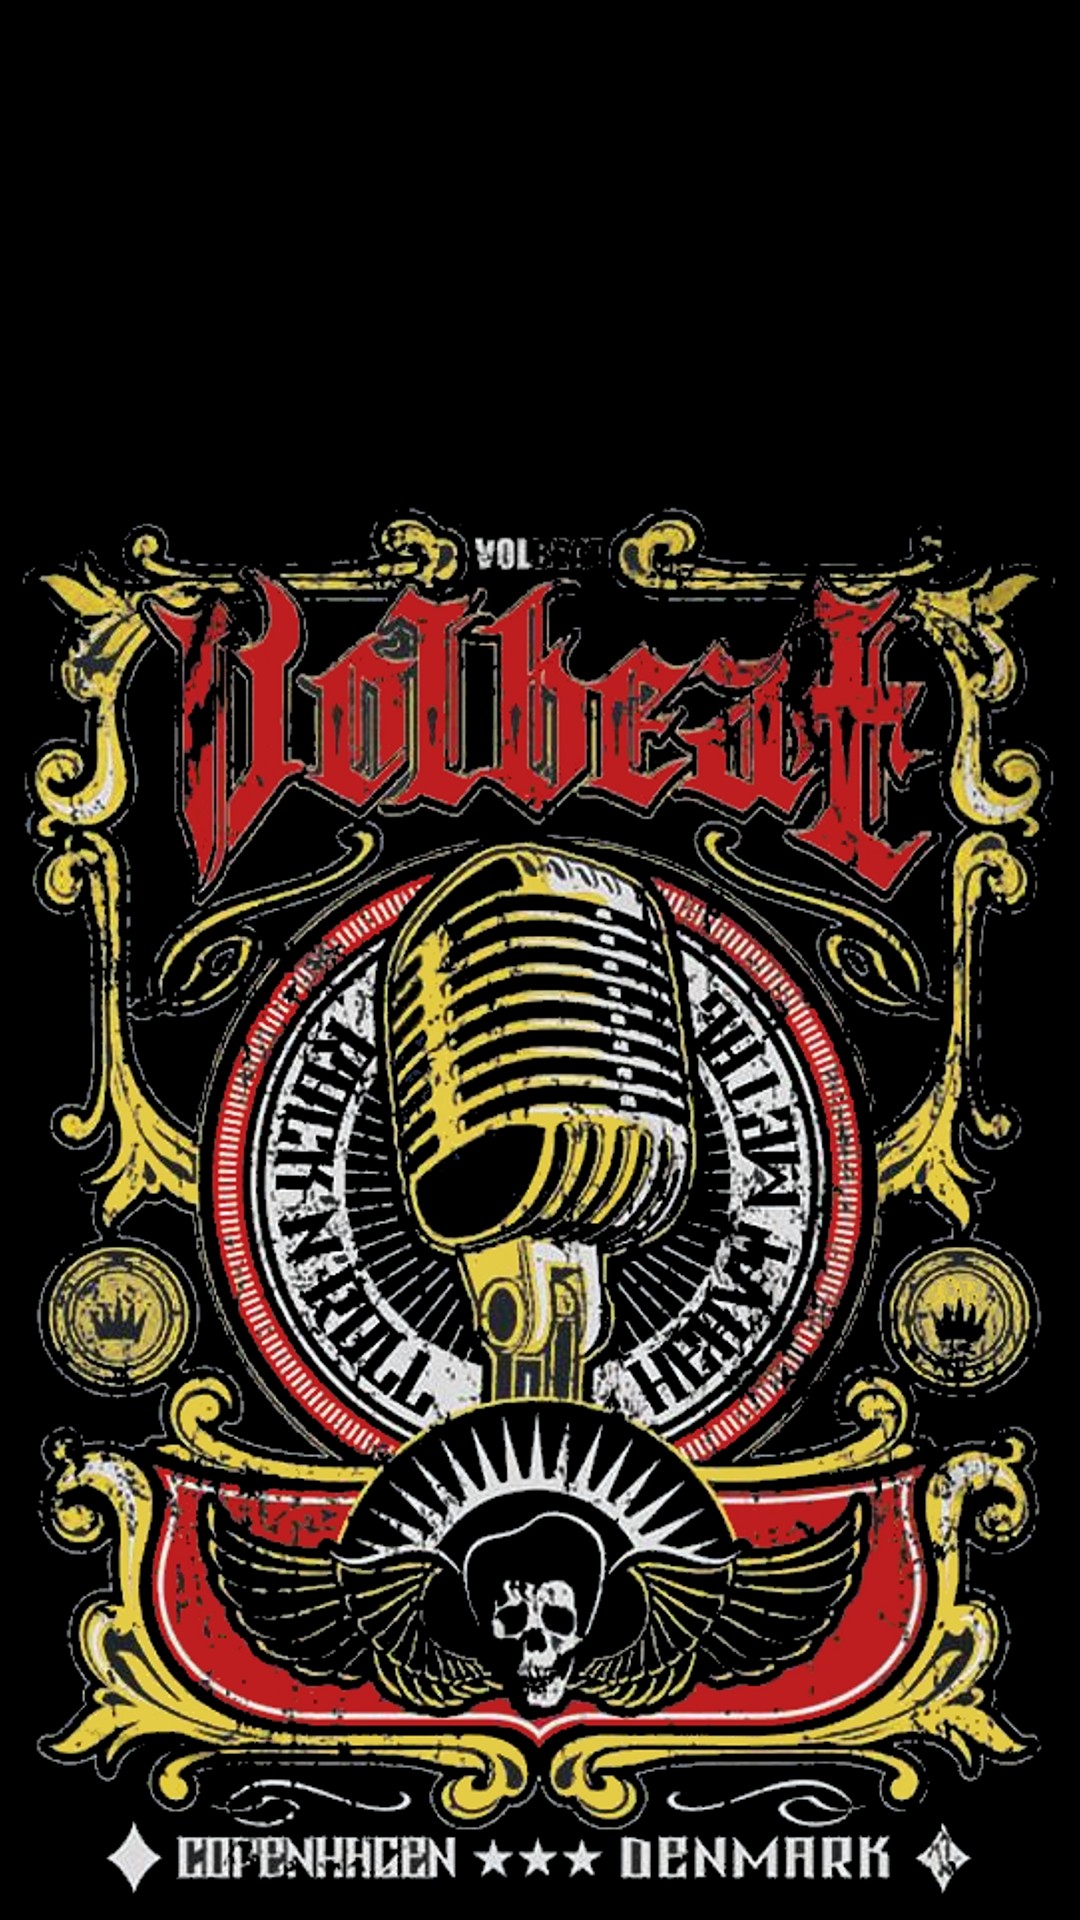 Volbeat Data Src Volbeat 1080x1920 Wallpaper Teahub Io